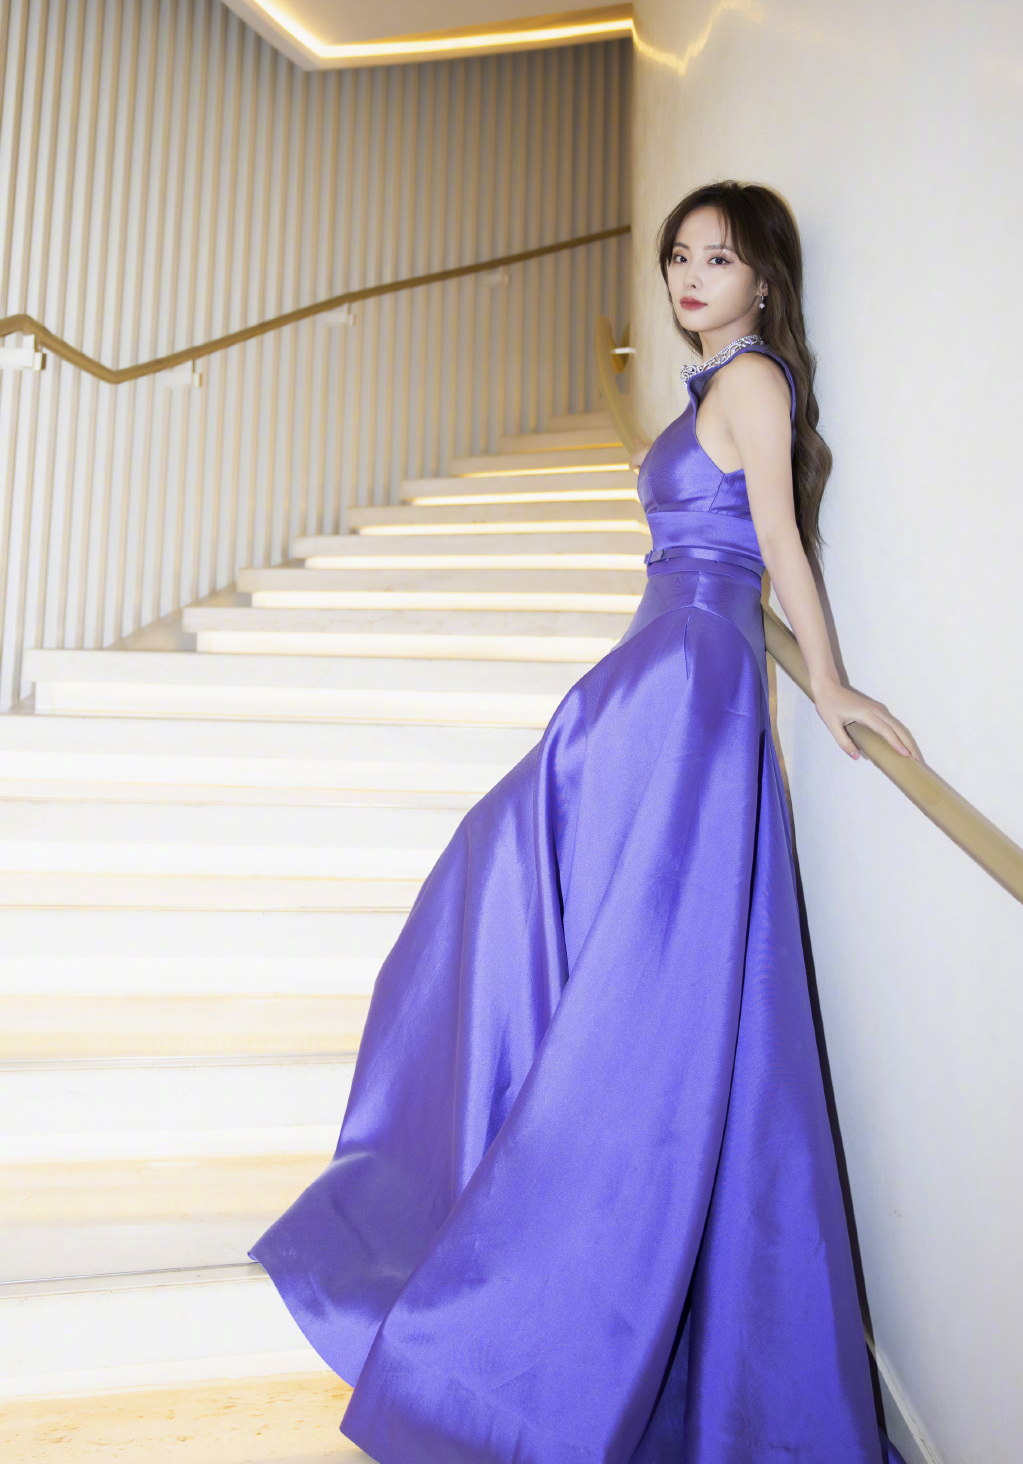 她一袭紫色流光公主裙神秘又美丽。